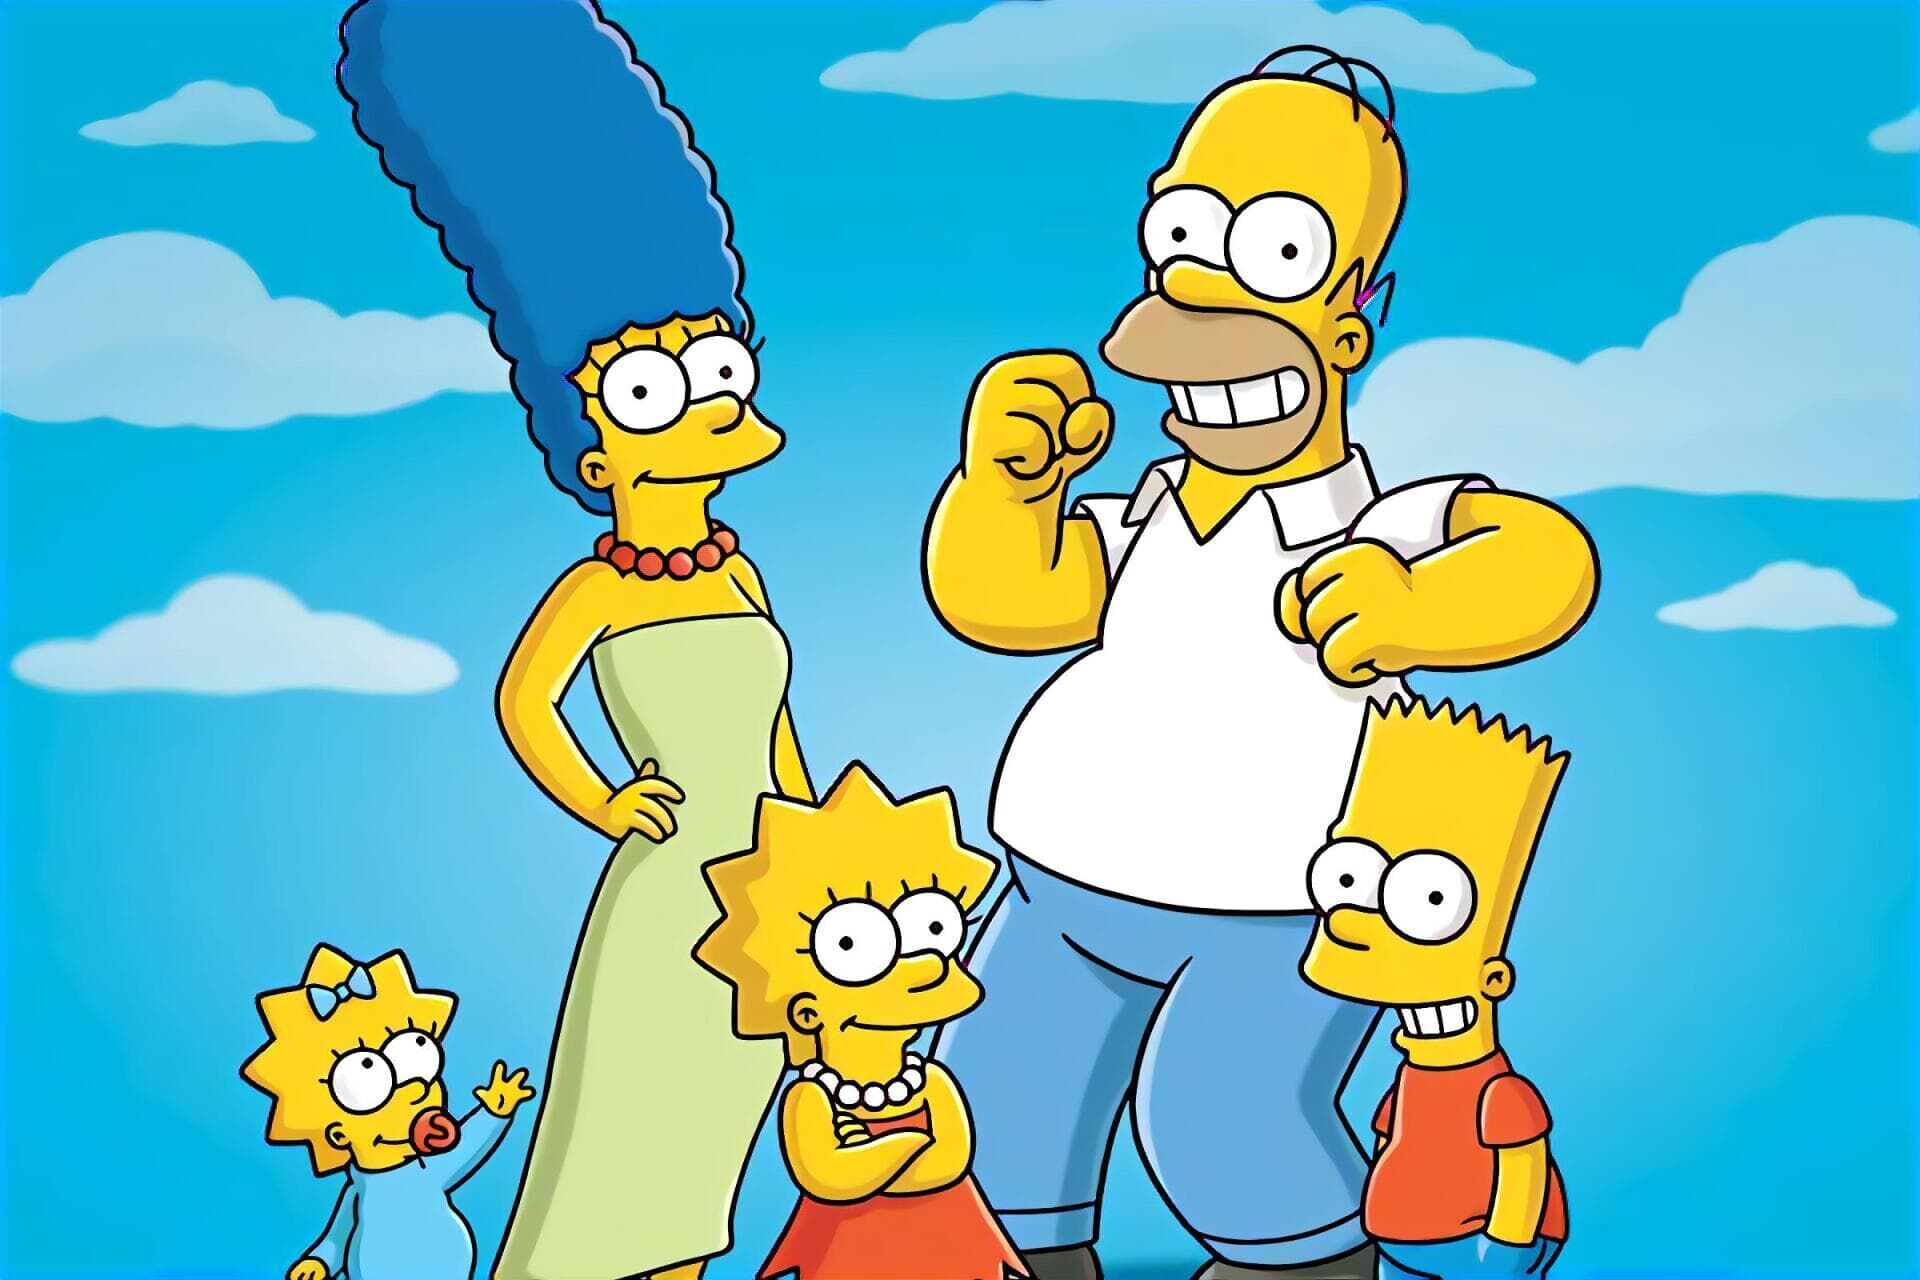 Les Simpson Saison 14 Épisode 3